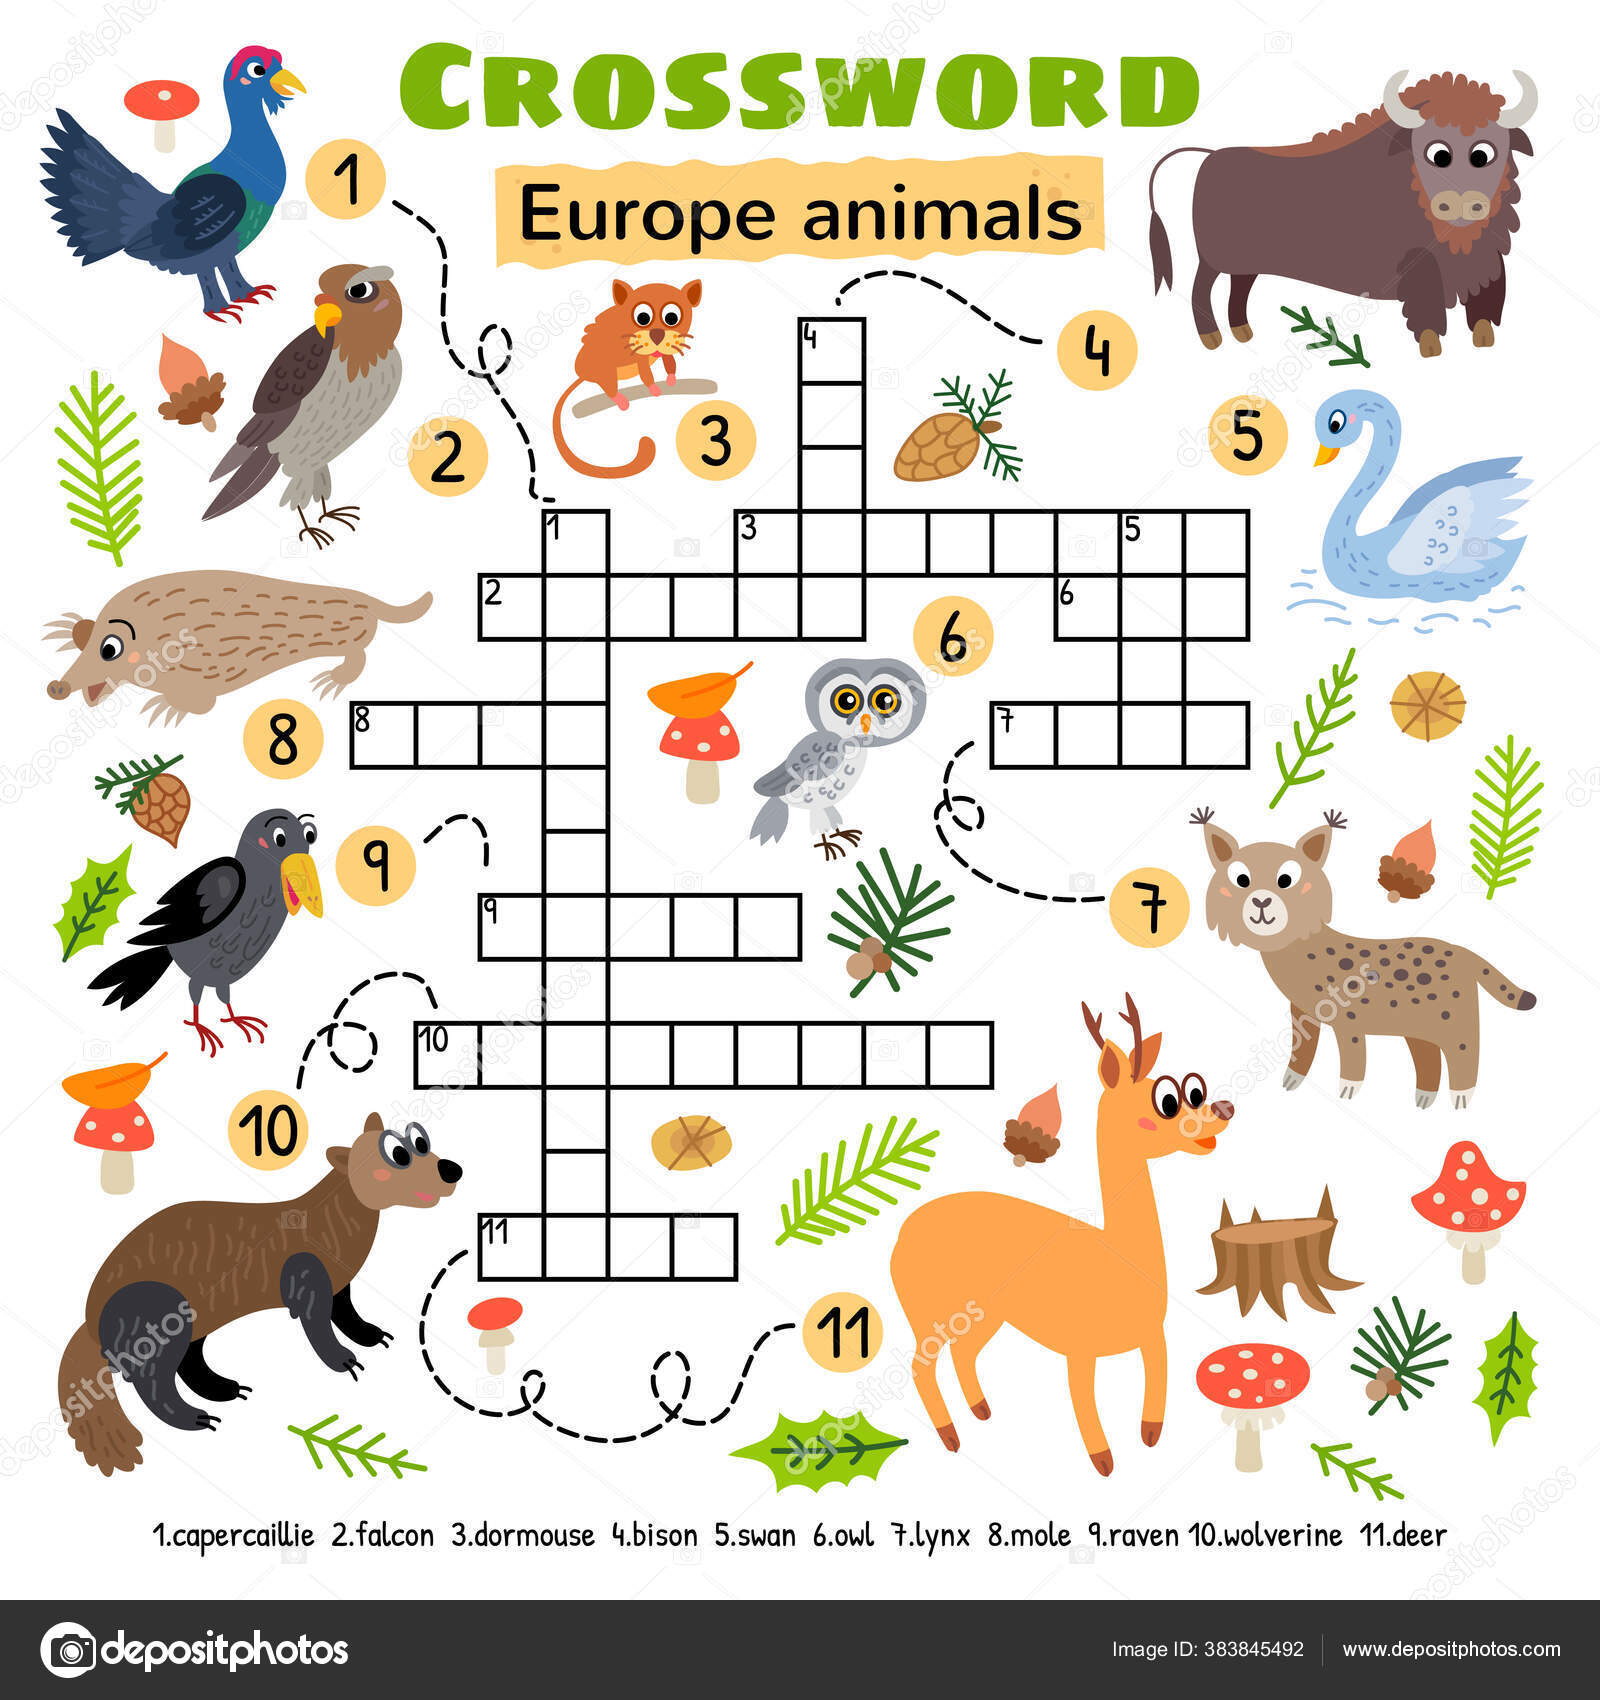 Pets -Learn Animals in English Free Games, Activities, Puzzles, Online  for kids, Preschool, Kindergarten